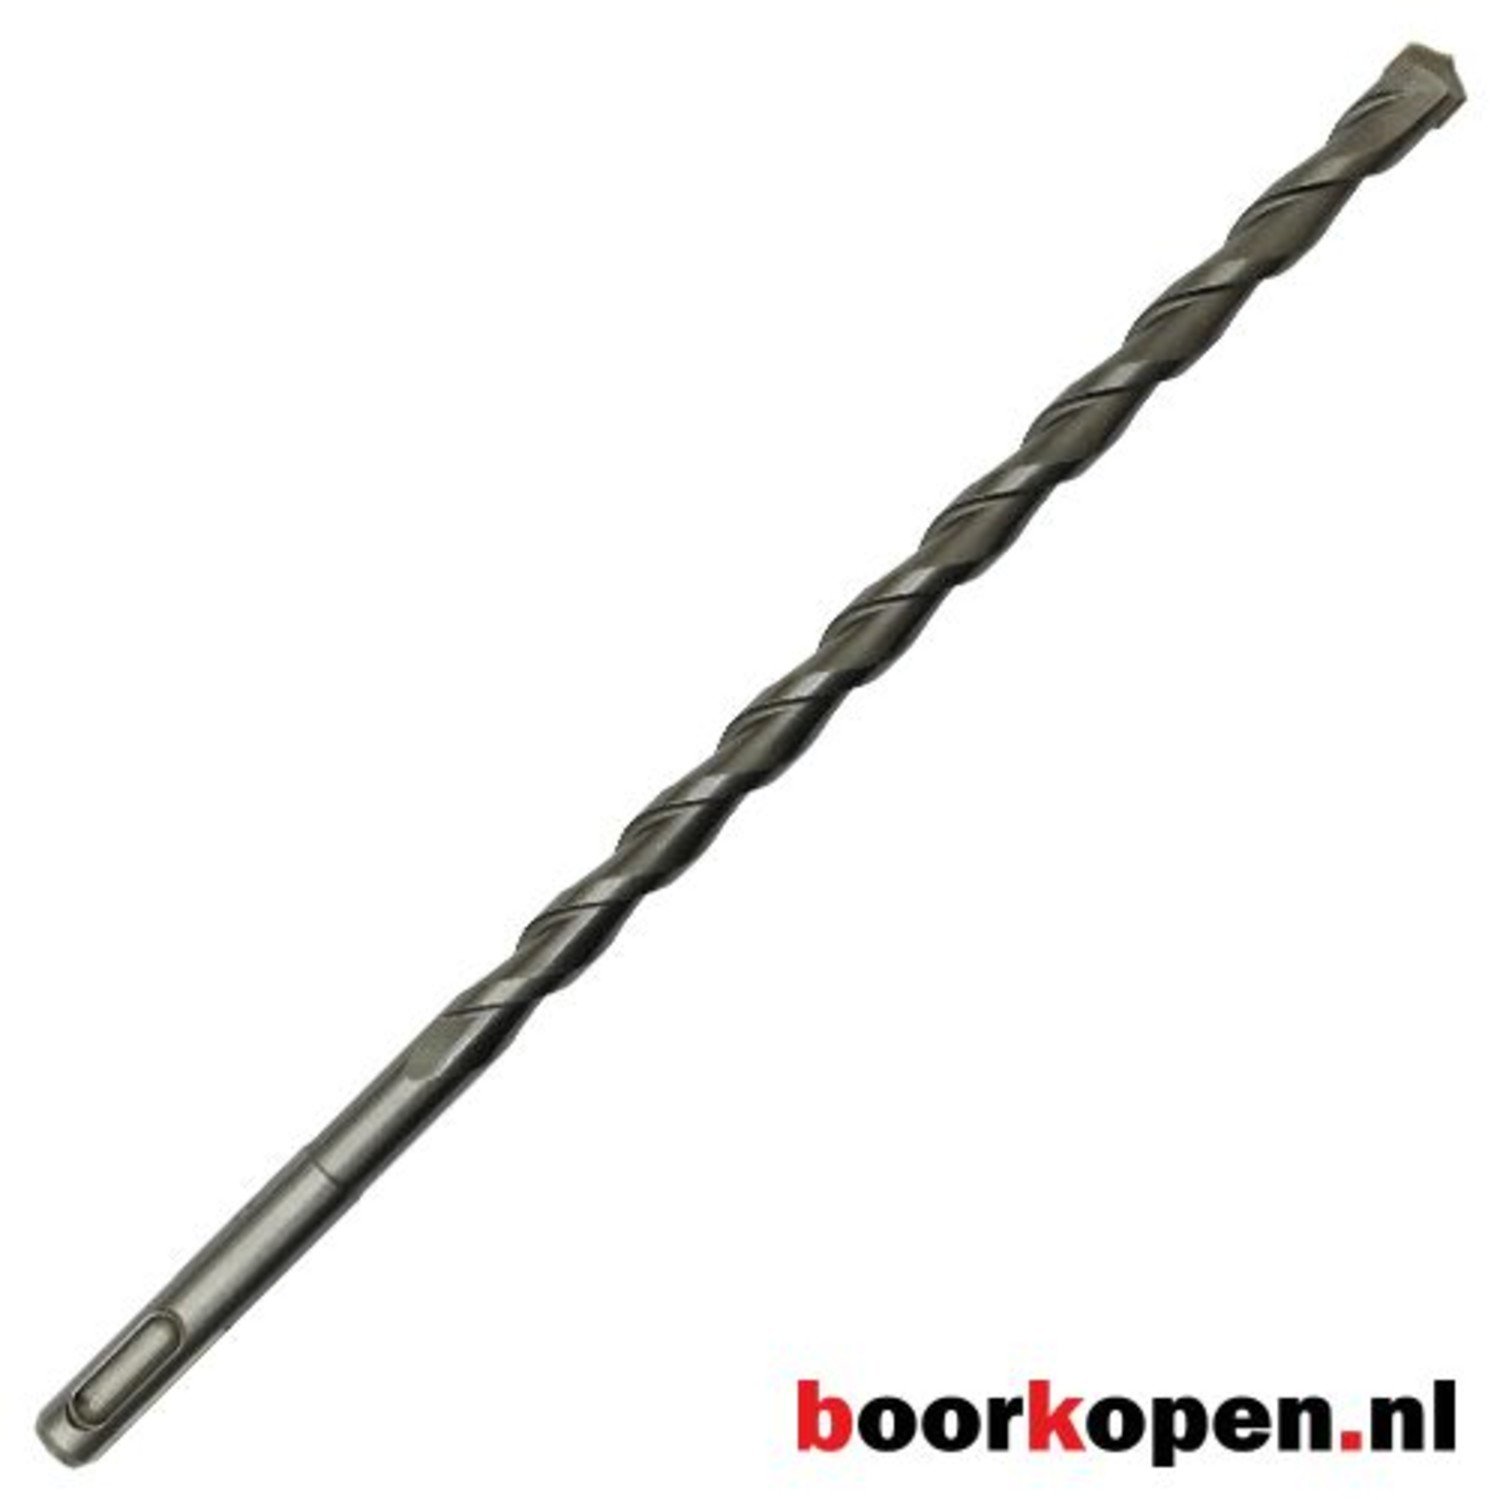 Almachtig terwijl kreupel Betonboor 20 mm SDS-plus 450 mm extra lang - Boorkopen.nl